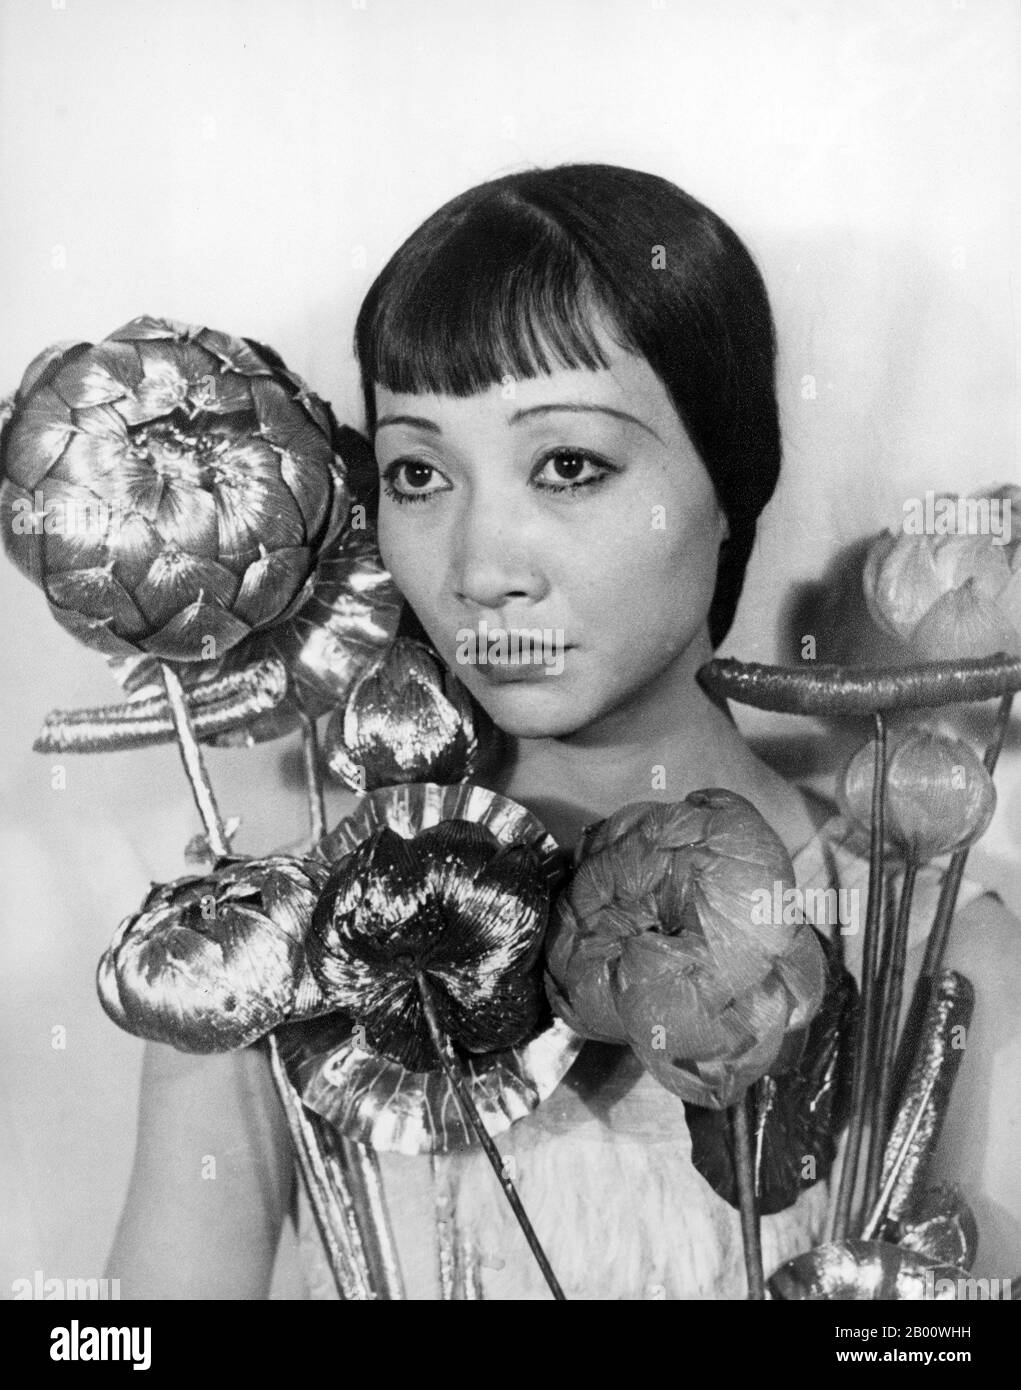 USA: Anna May Wong fotografiert von Carl Van Vechten (1880-1964), 22. September 1935. Anna May Wong (3. Januar 1905 – 3. Februar 1961) war eine amerikanische Schauspielerin, der erste chinesisch-amerikanische Filmstar und die erste asiatische Amerikanerin, die ein internationaler Star wurde. Ihre lange und abwechslungsreiche Karriere umfasste sowohl Stummfilm als auch Tonfilm, Fernsehen, Bühne und Radio. Stockfoto